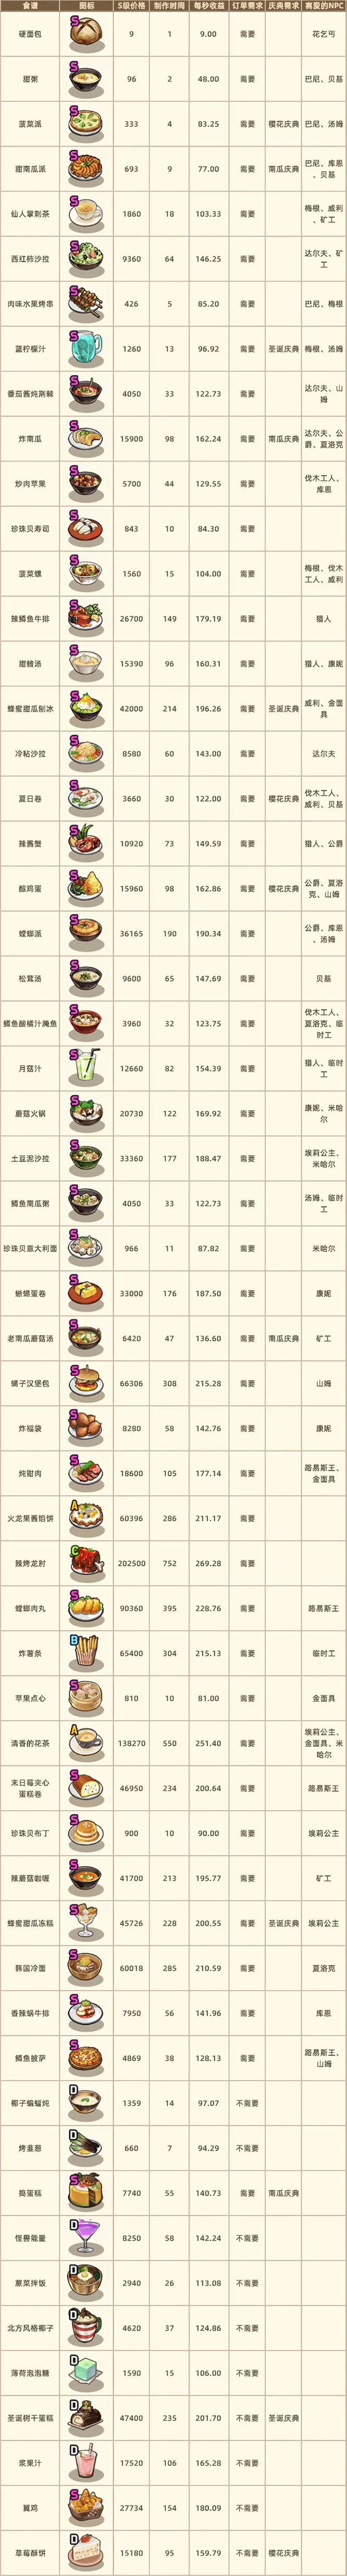 流浪餐厅厨神菜谱选择指南 菜谱价格、收益及NPC喜好数据一览